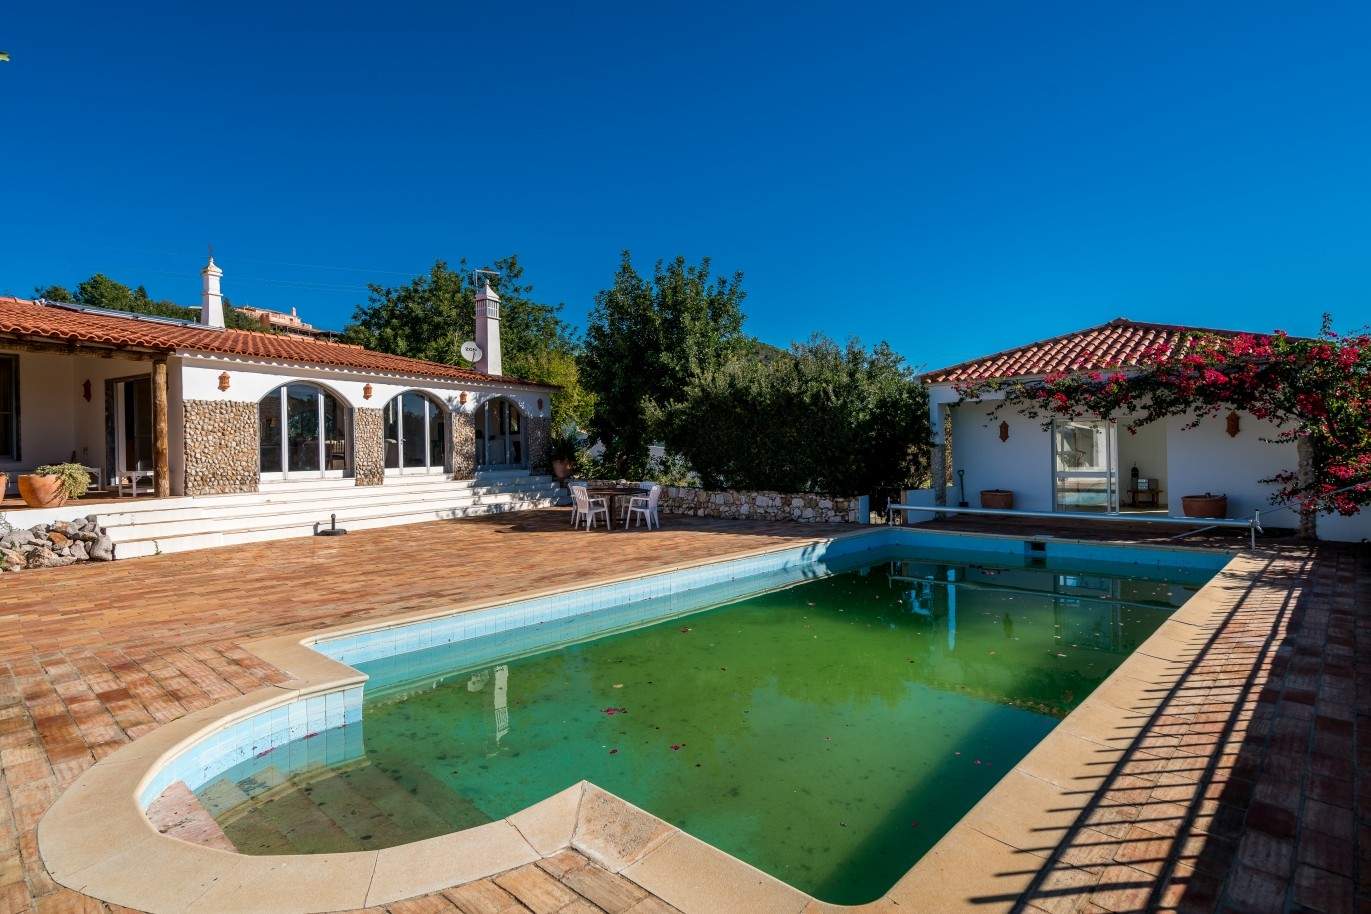 Piso en venta, piscina y tenis, Sta Bárbara de Nexe, Algarve, Portugal_70534